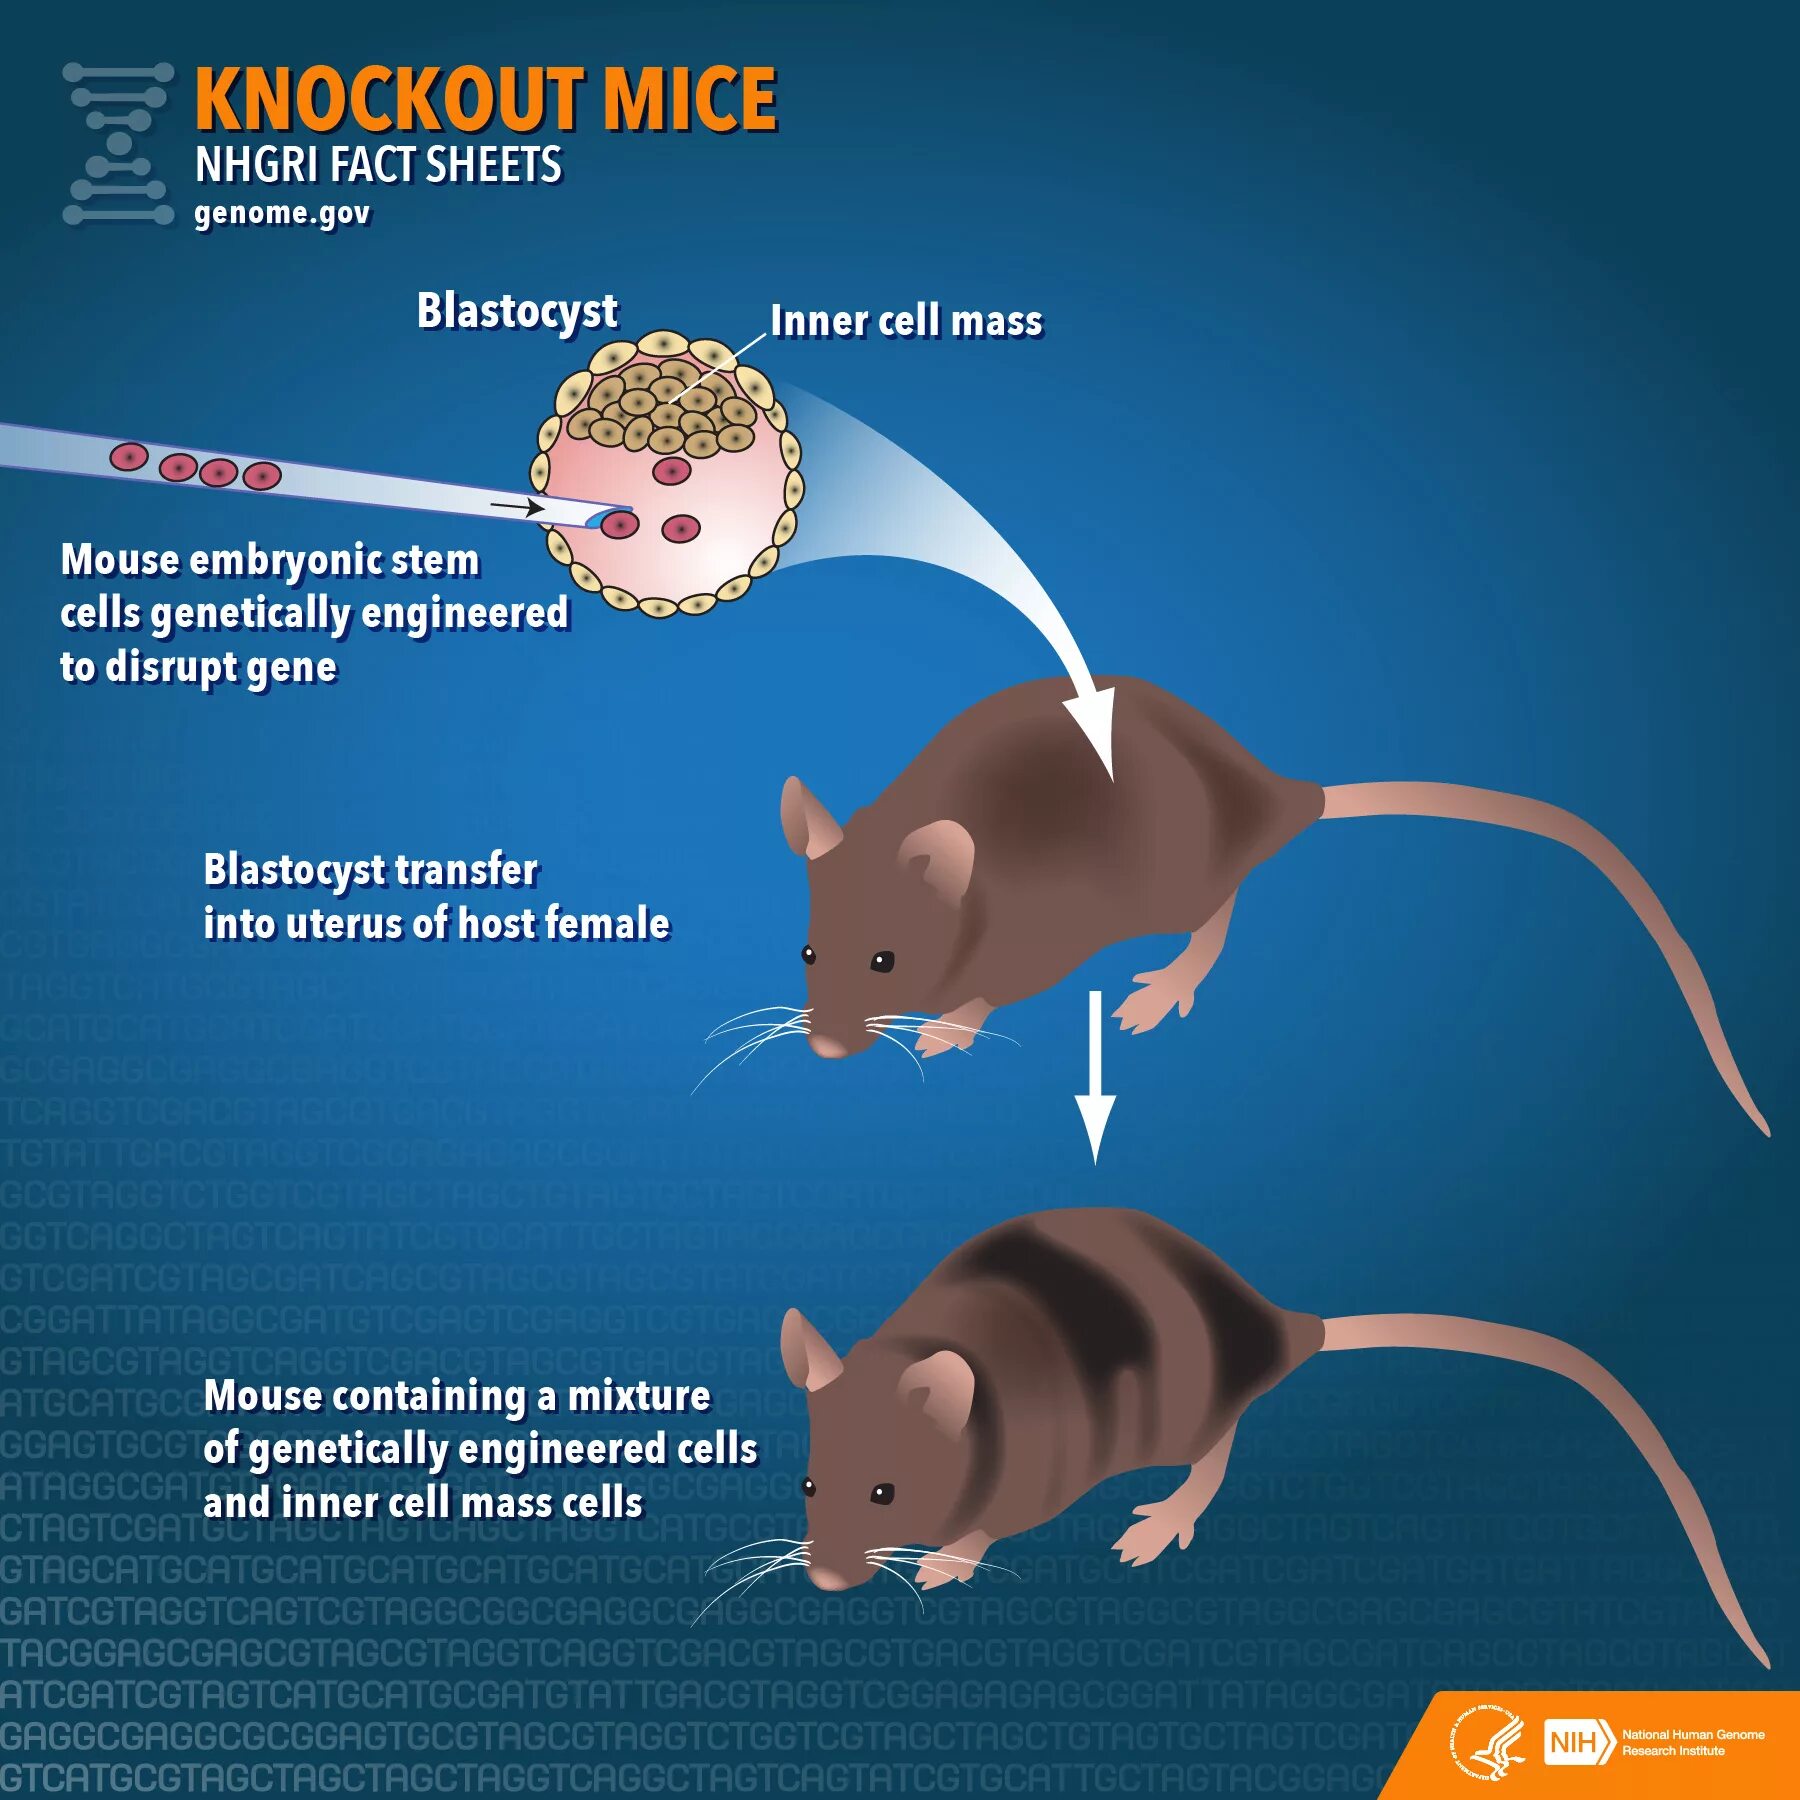 Mice cells